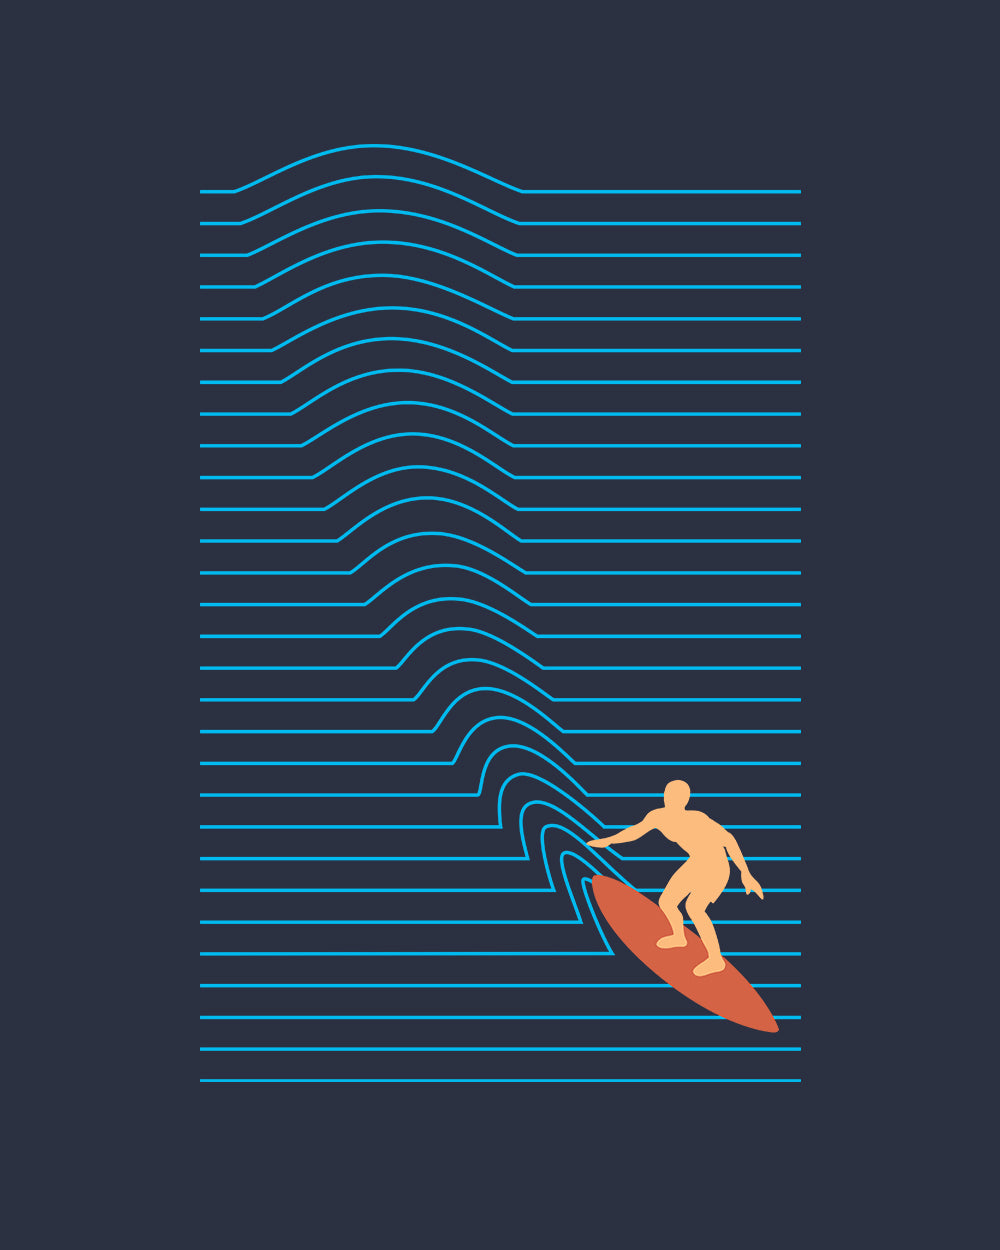 Surf Lines Kids T-Shirt Australia Online #colour_navy